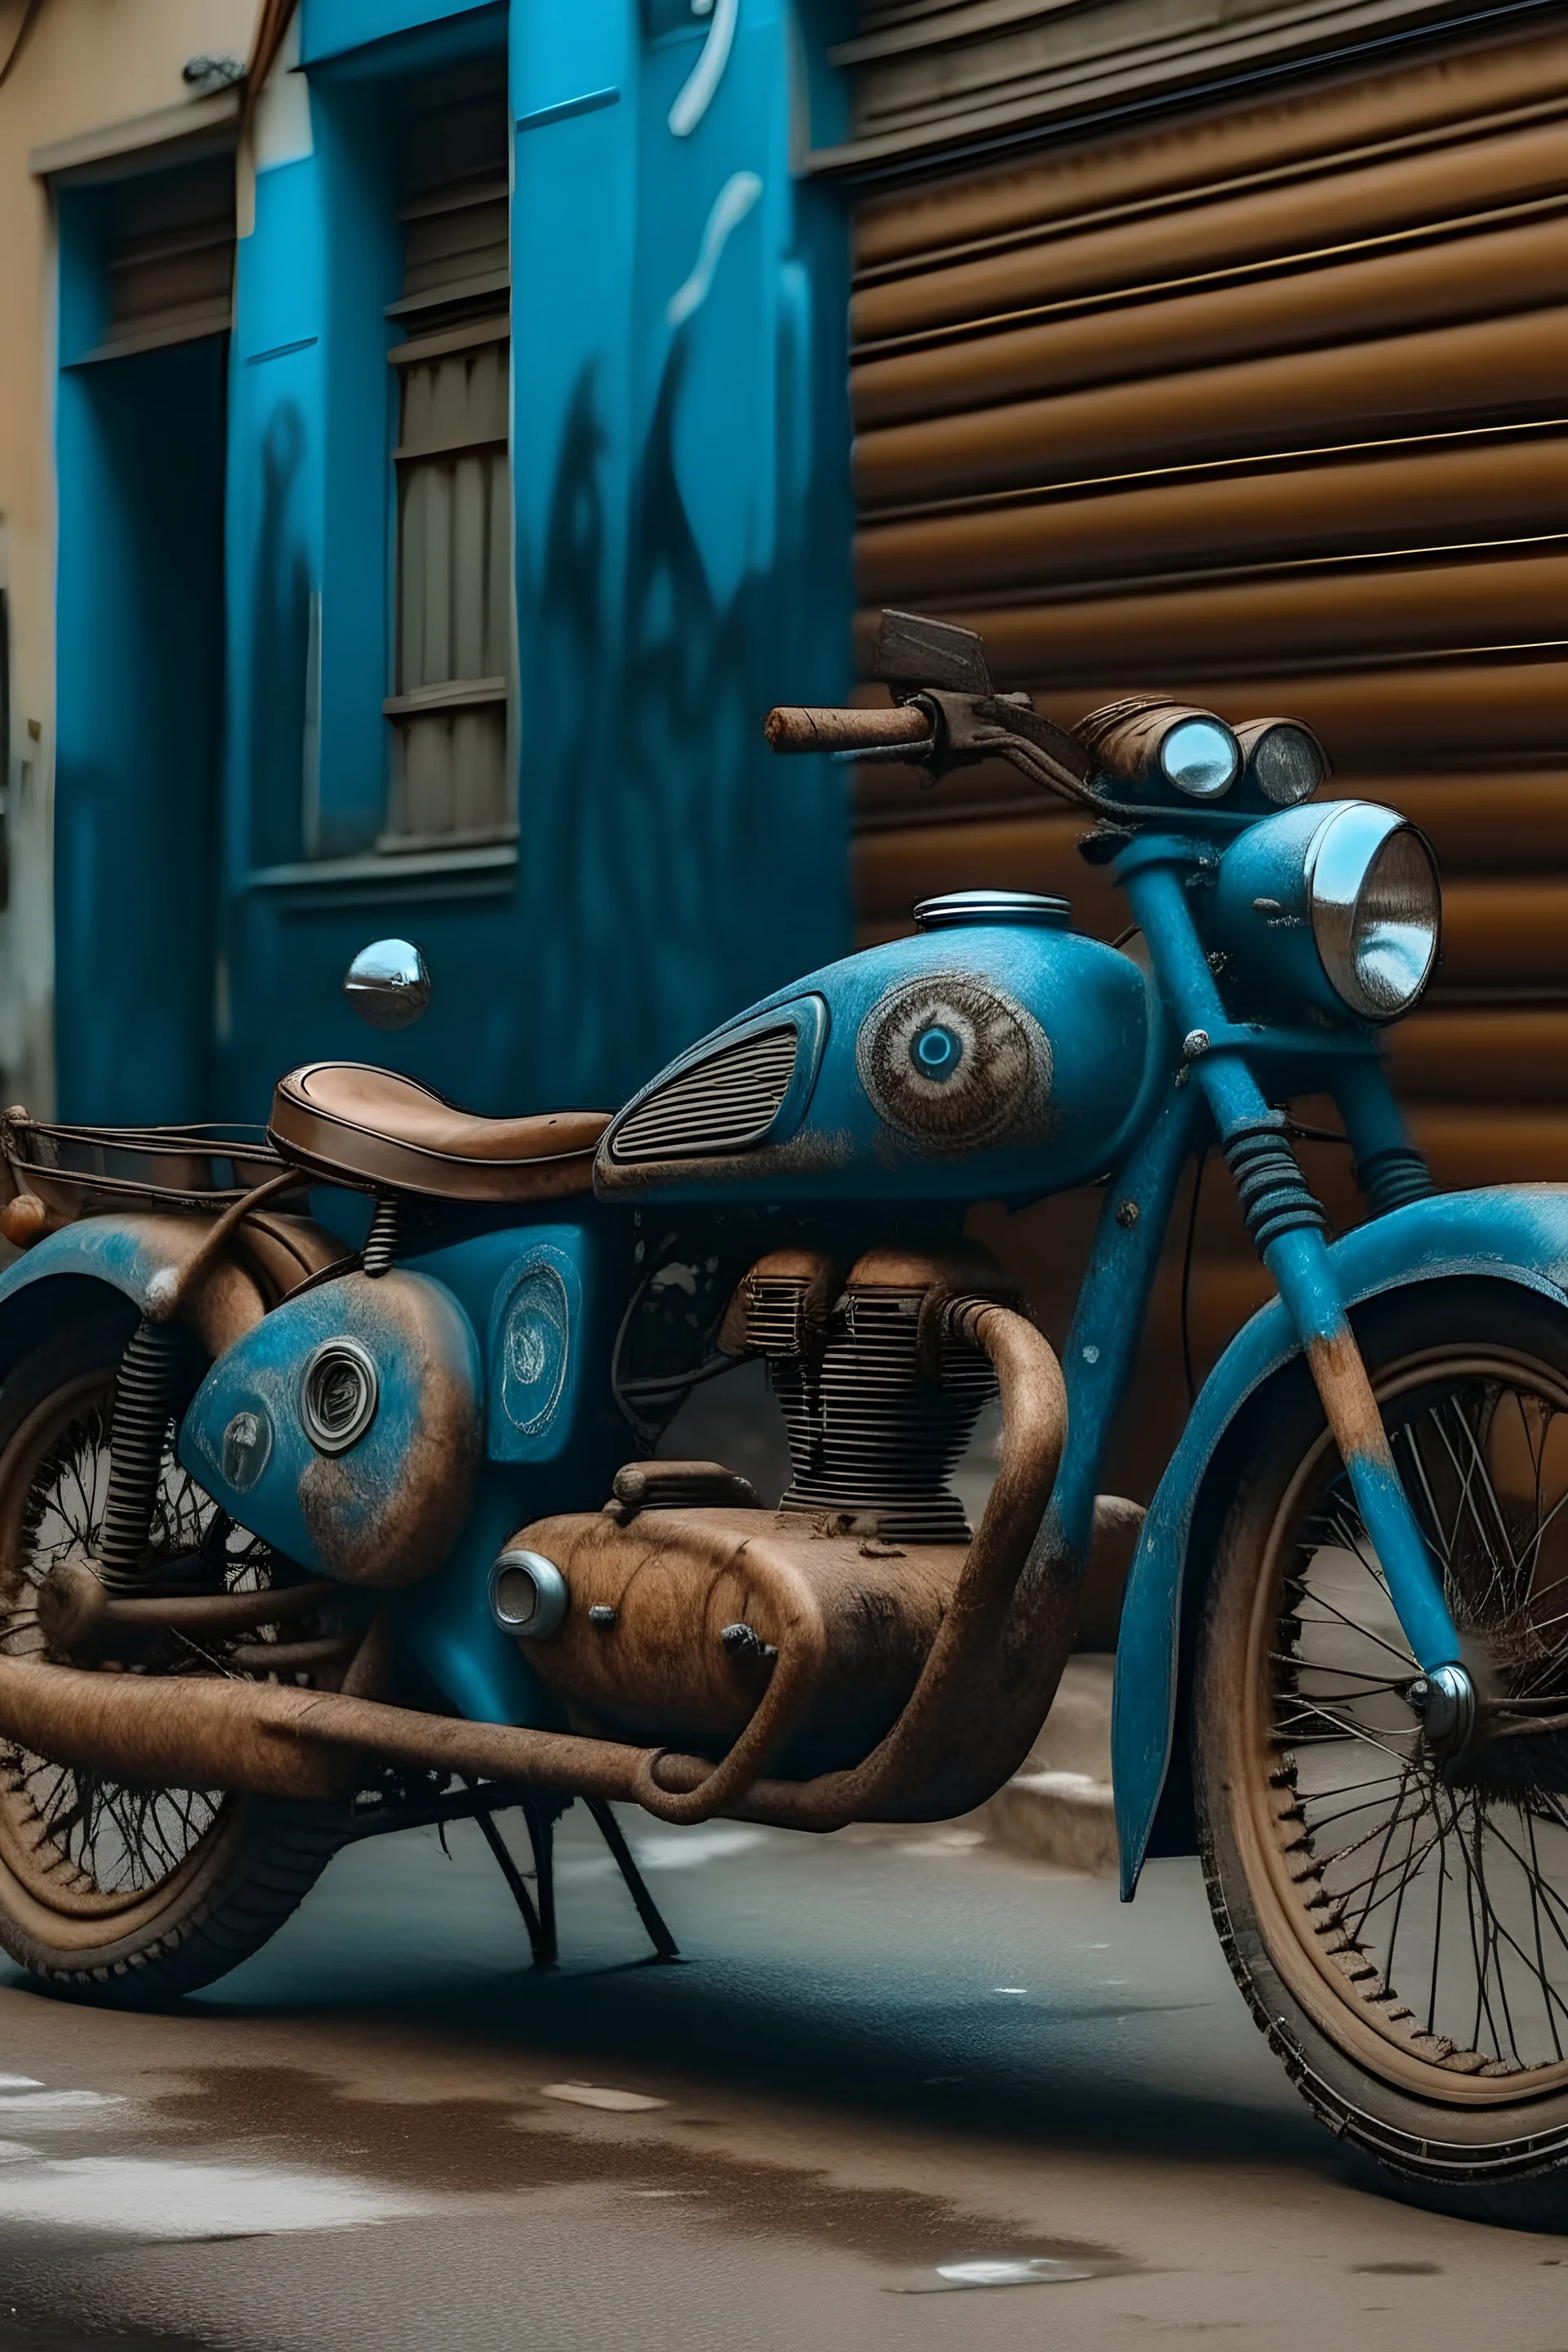 Auto de dos ruedas pintado de marrón y azul con una mujer